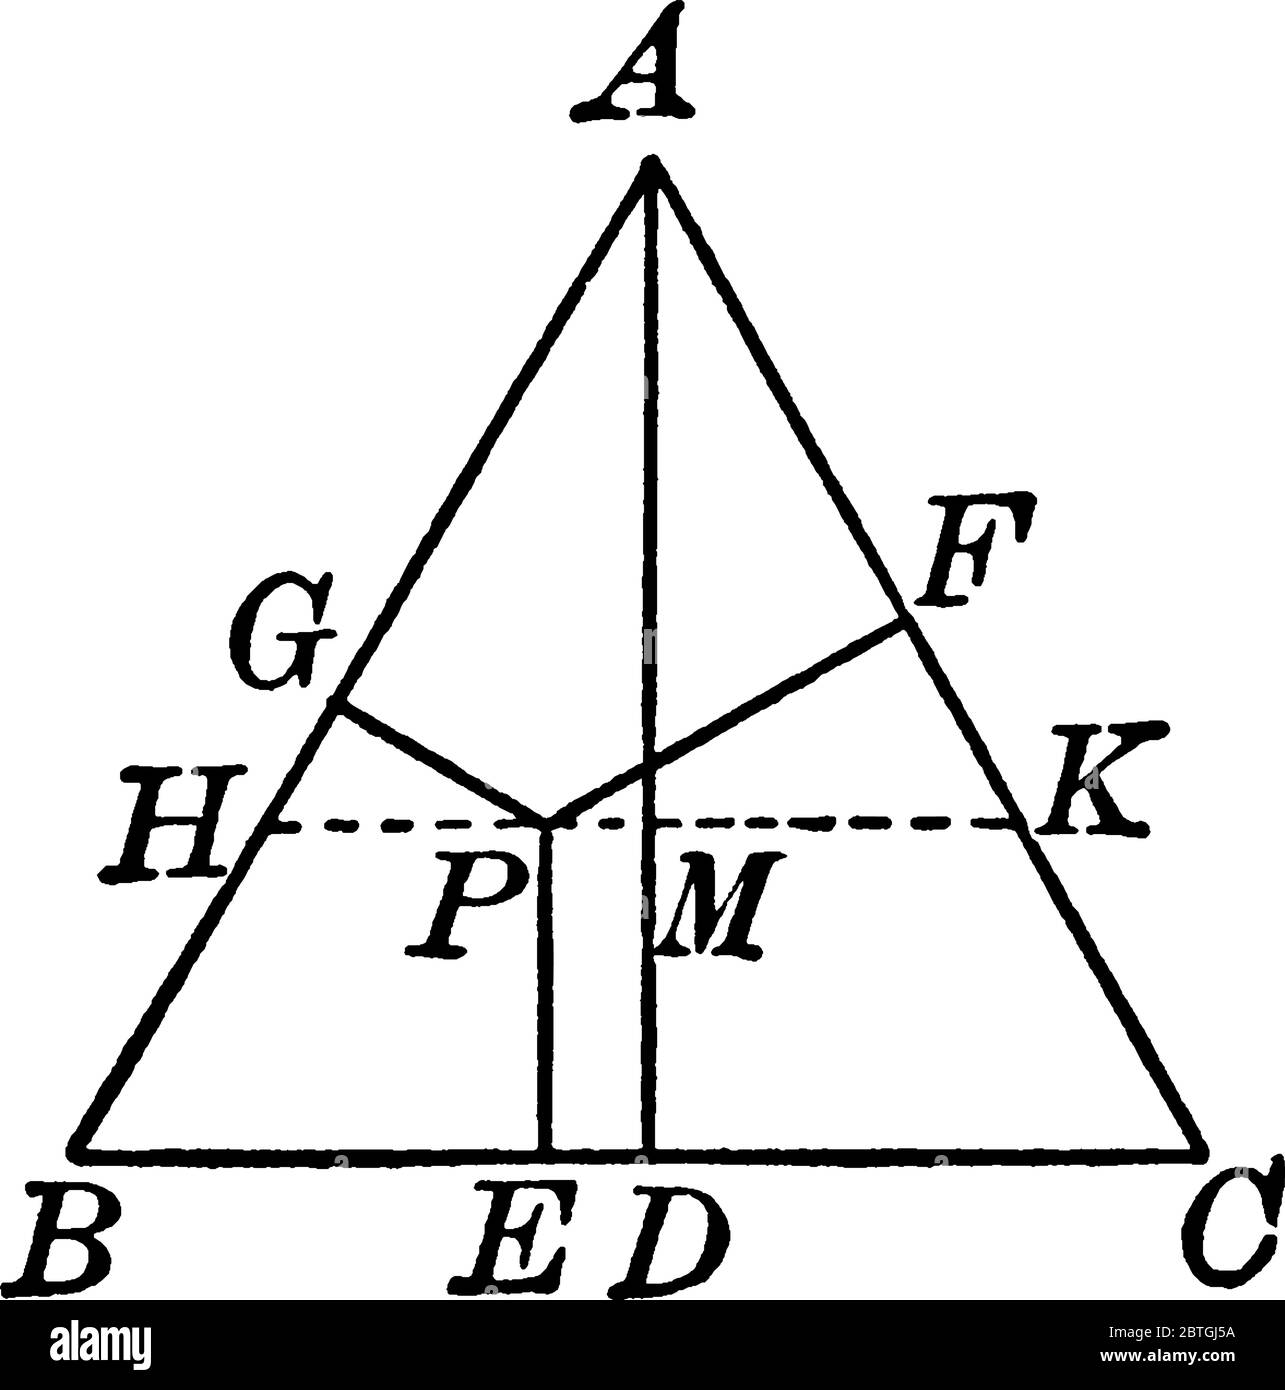 Costruzione del triangolo equilatero con vertici ABC e altezza ad, disegno  di linea vintage o illustrazione di incisione Immagine e Vettoriale - Alamy